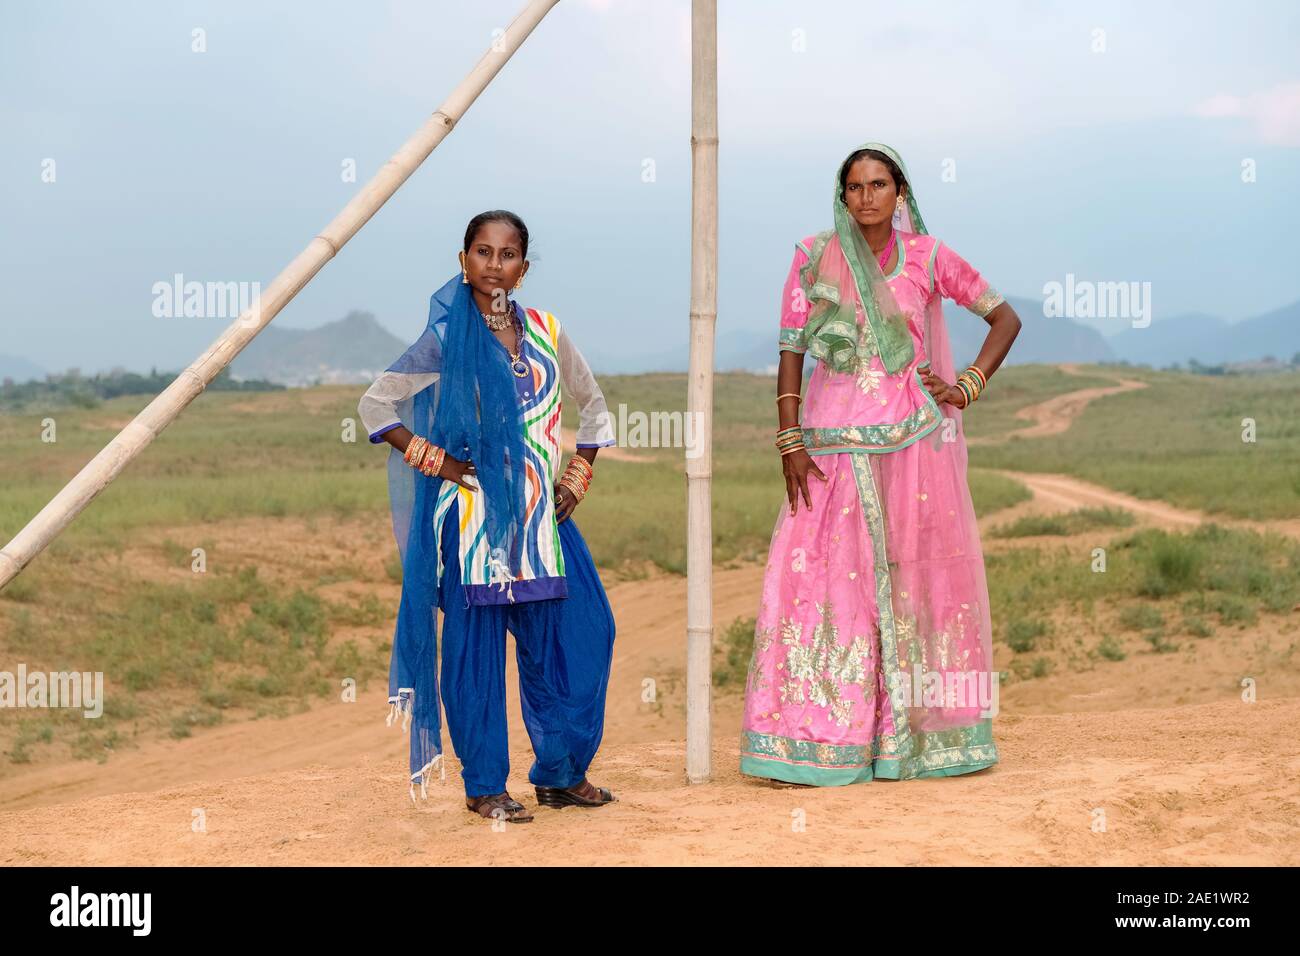 PUSHKAR, INDIEN - November 07, 2019: Porträt von zwei Frauen in farbenfrohen traditionellen Kleidung und Schleier in der Wüste Thar am 31. Oktober 2019 in Pushkar, Ra Stockfoto